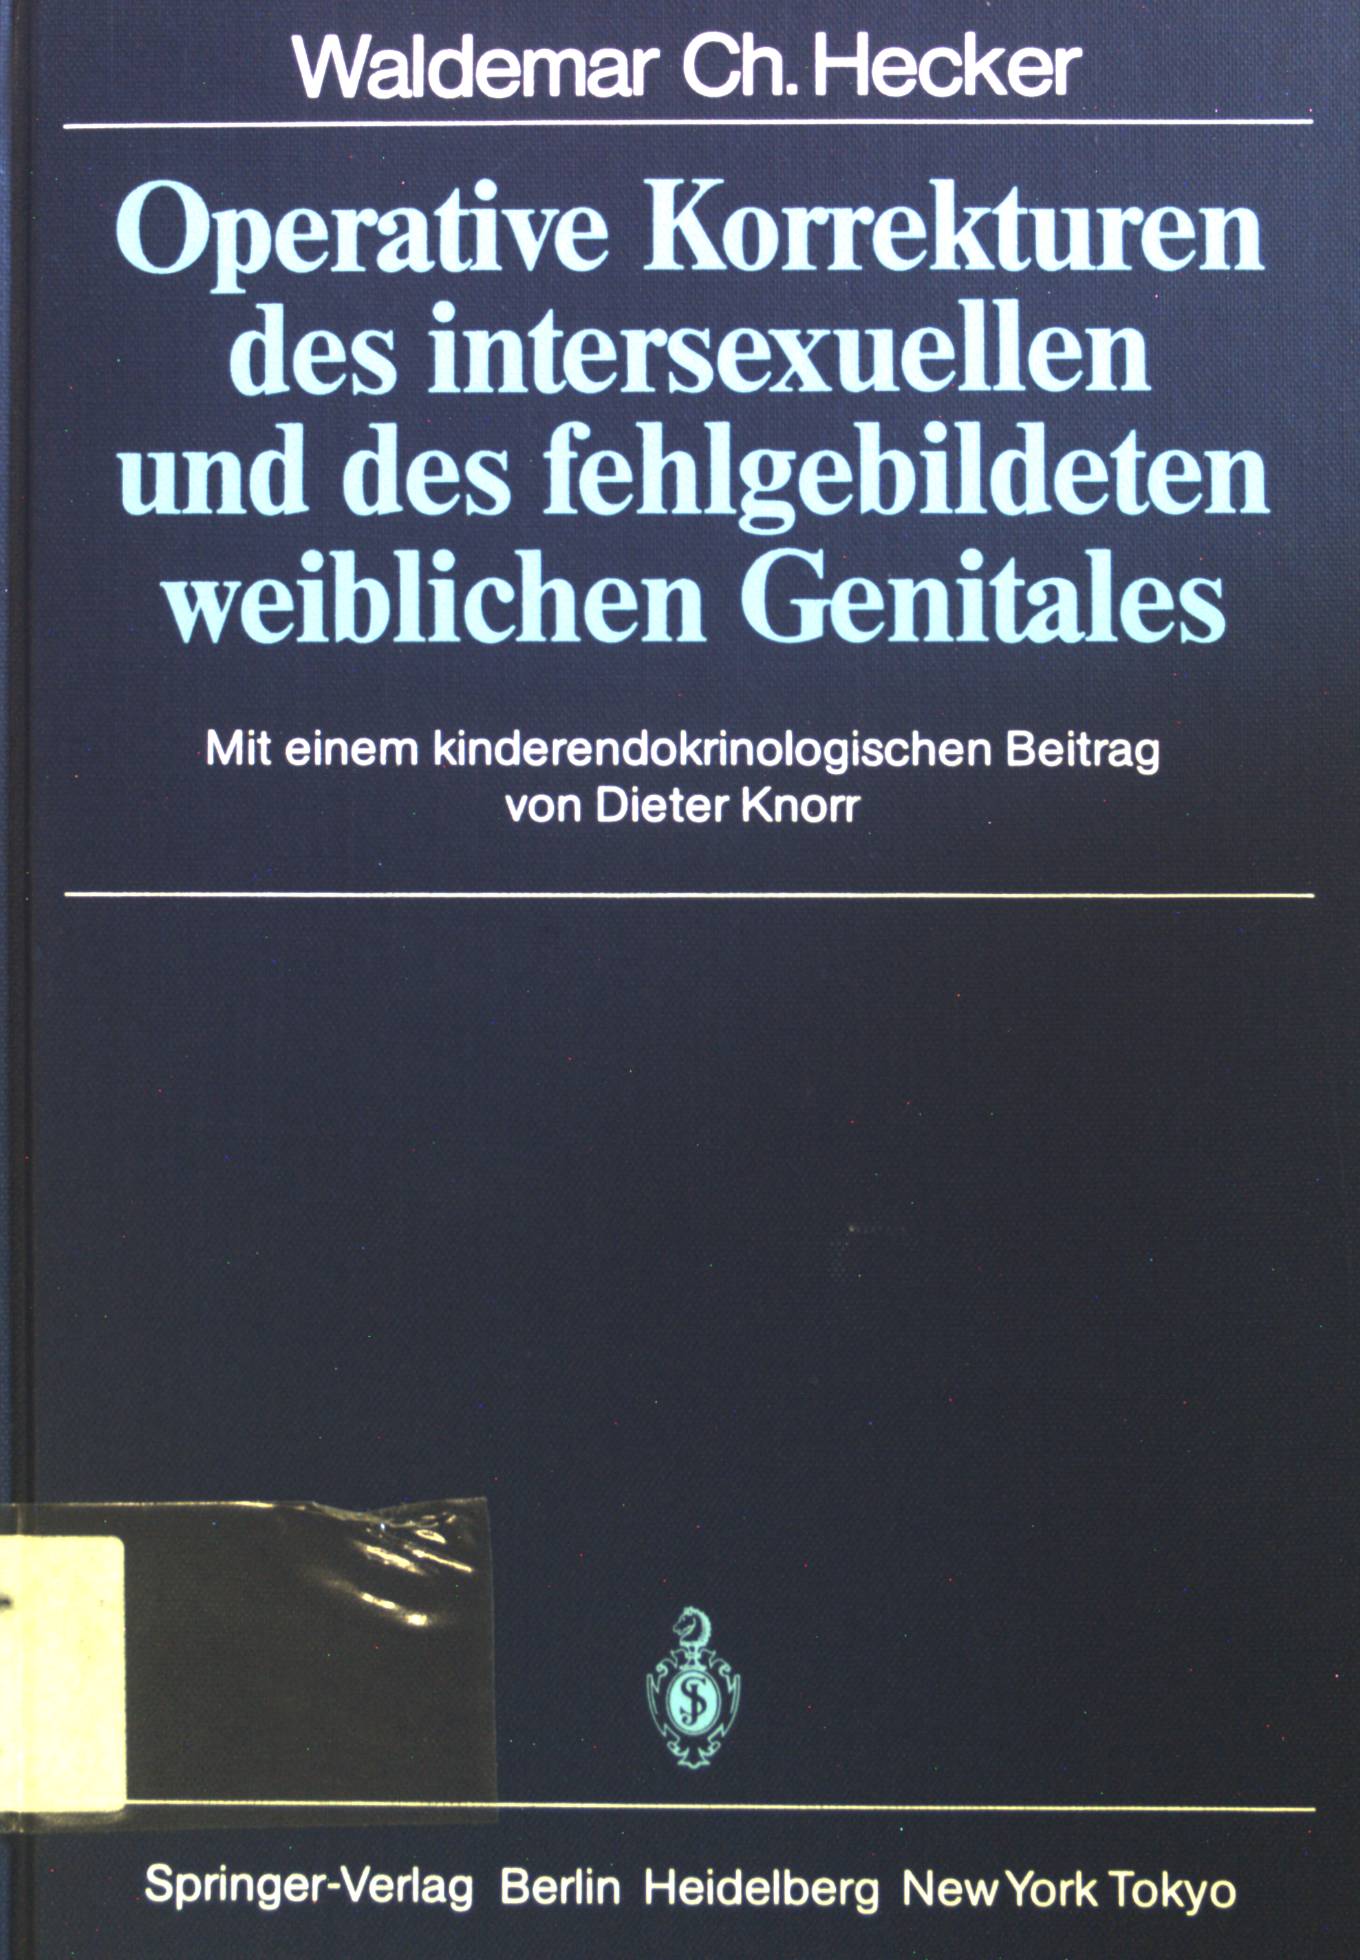 Operative Korrekturen des intersexuellen und des fehlgebildeten weiblichen Genitales (German Edition)